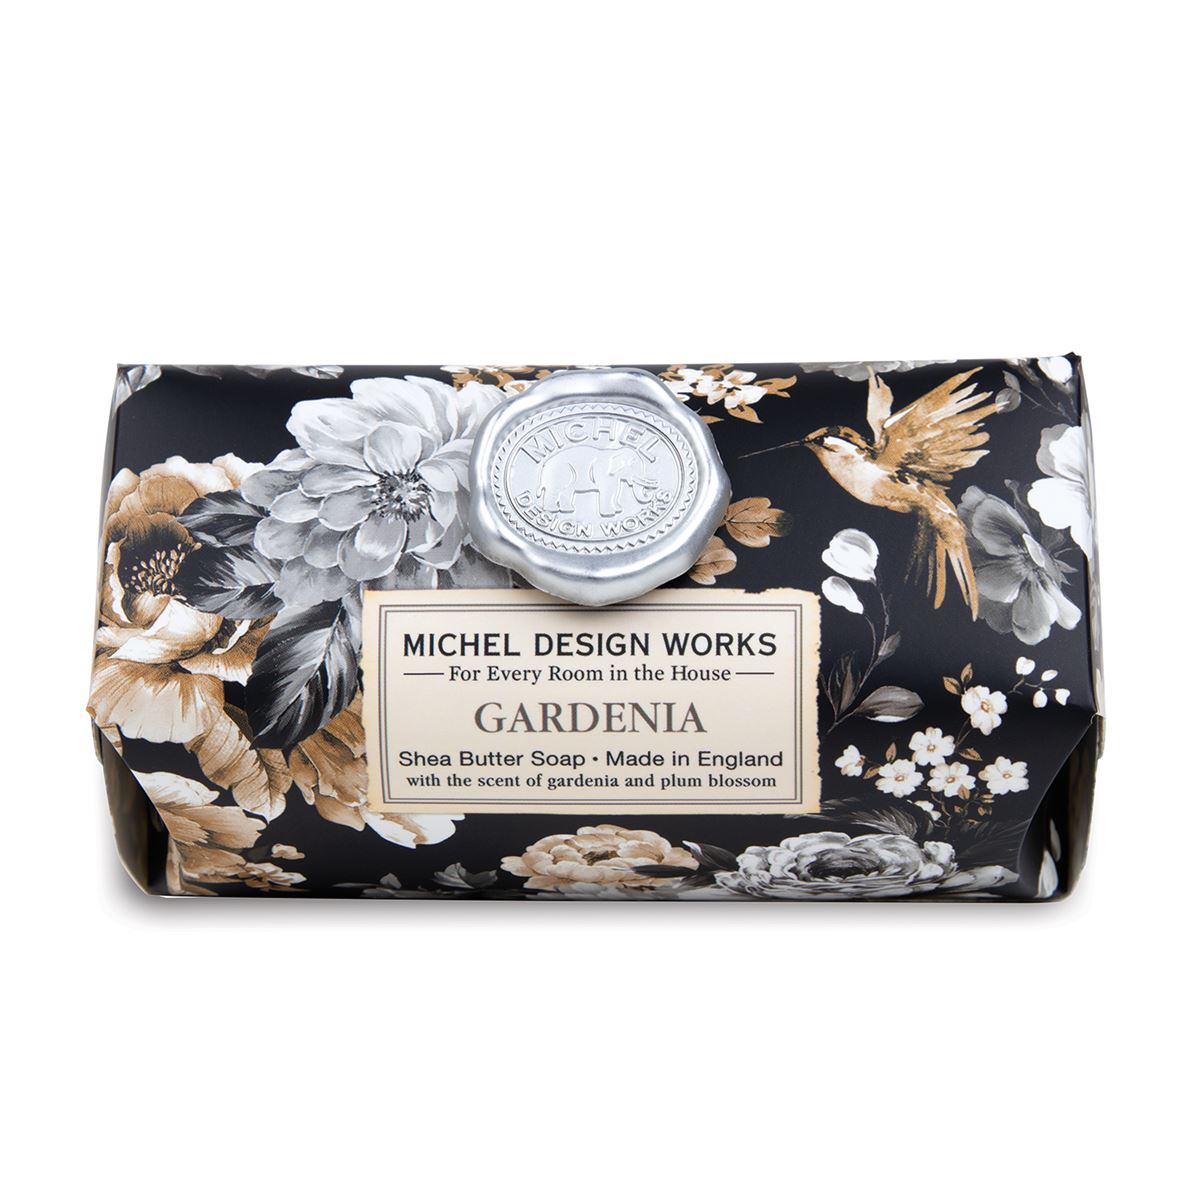 Michel Design Works - Gardenia Large Bath Soap Bar